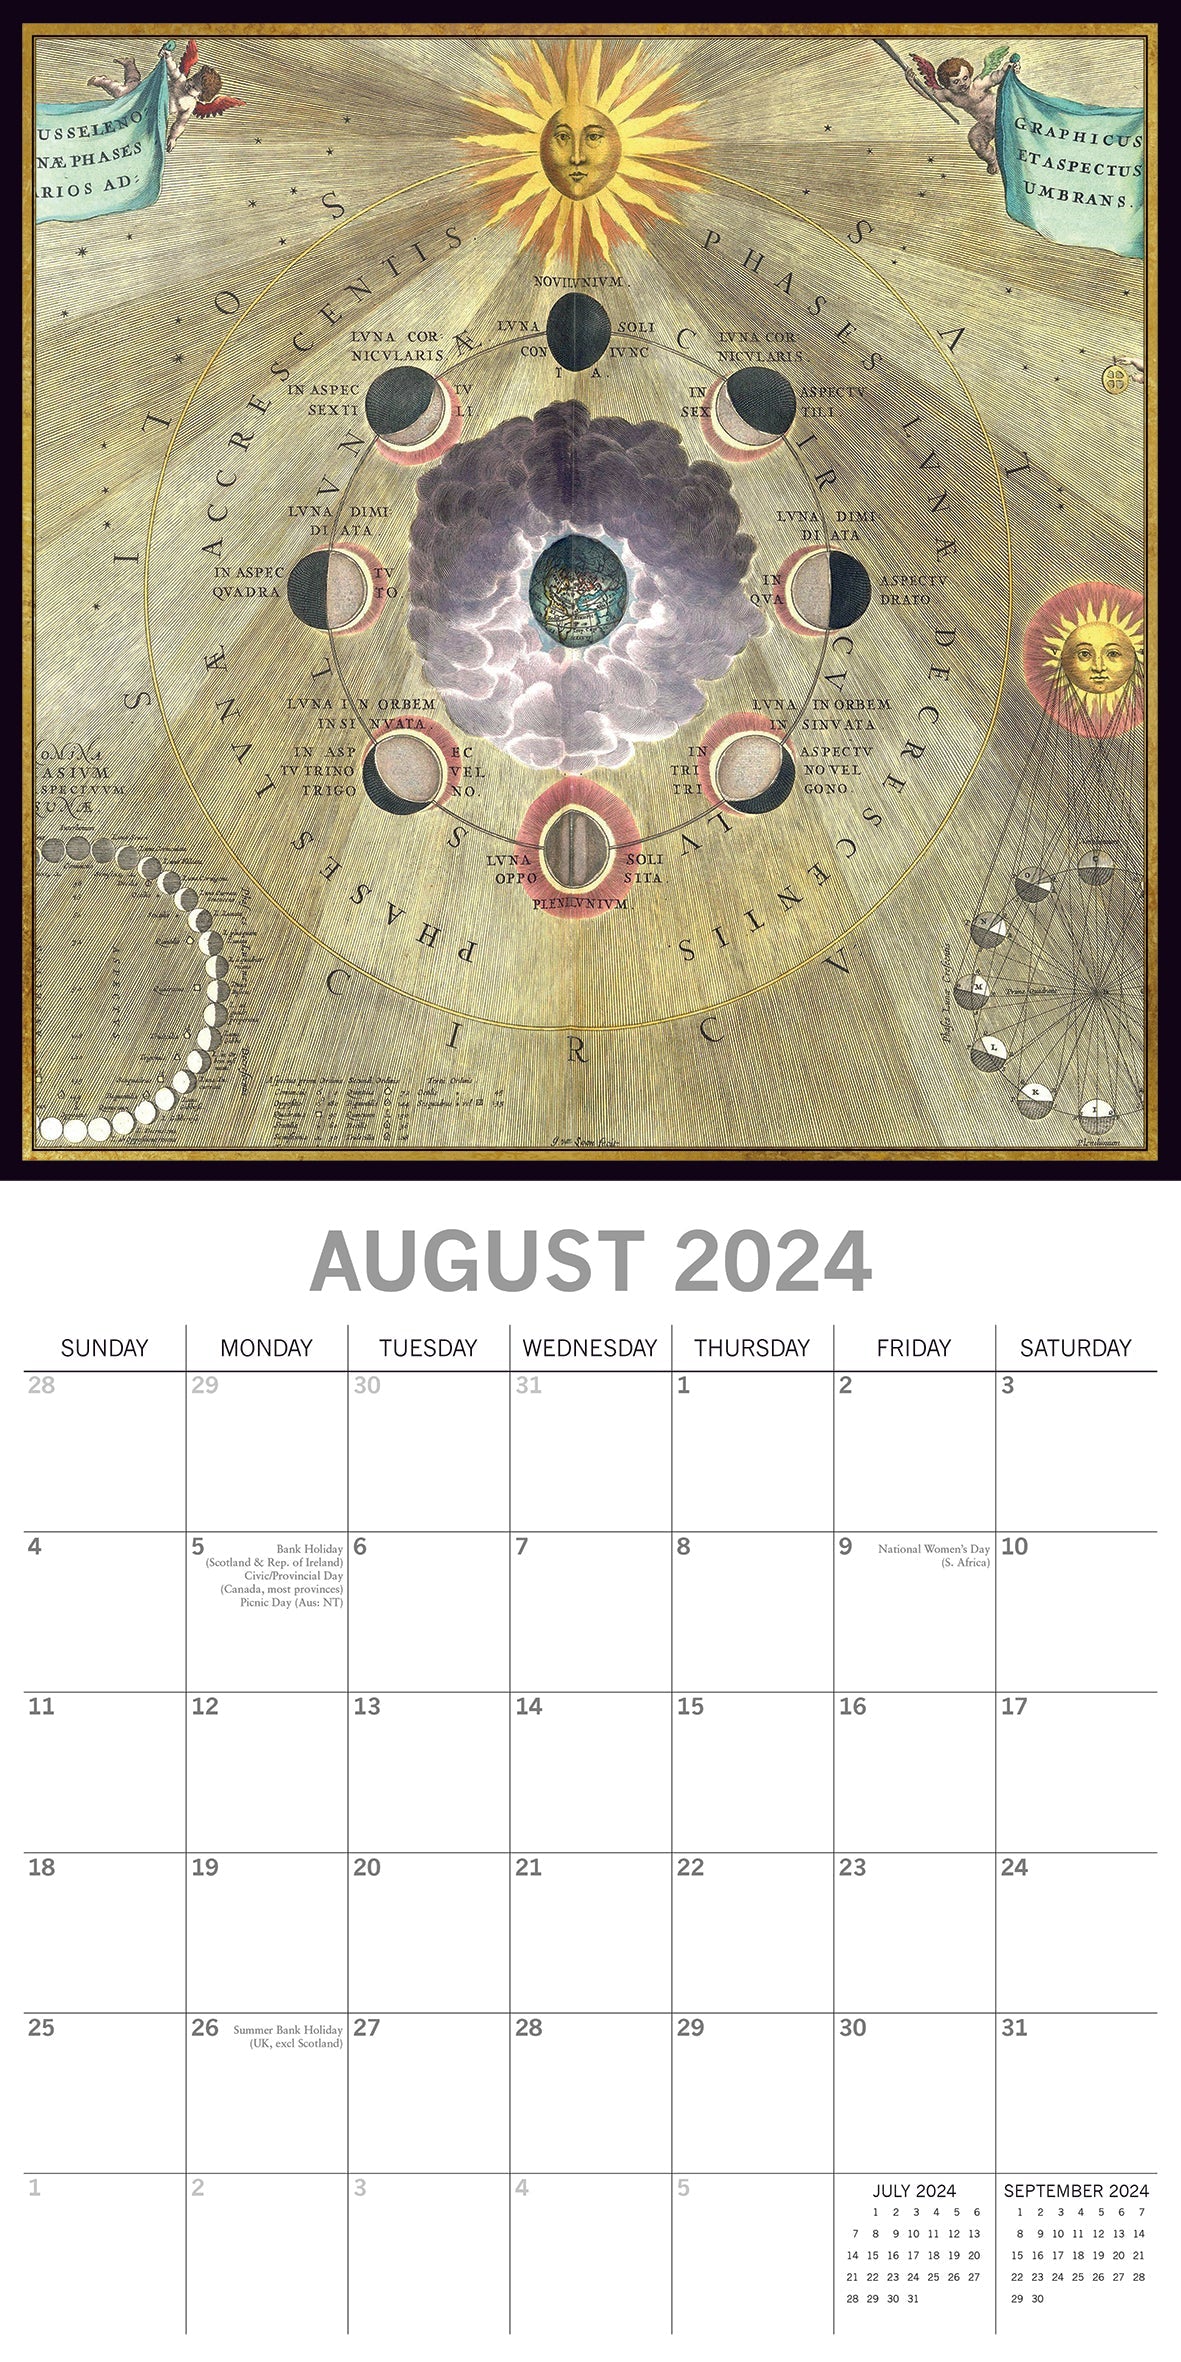 2024 Celestial - Square Wall Calendar